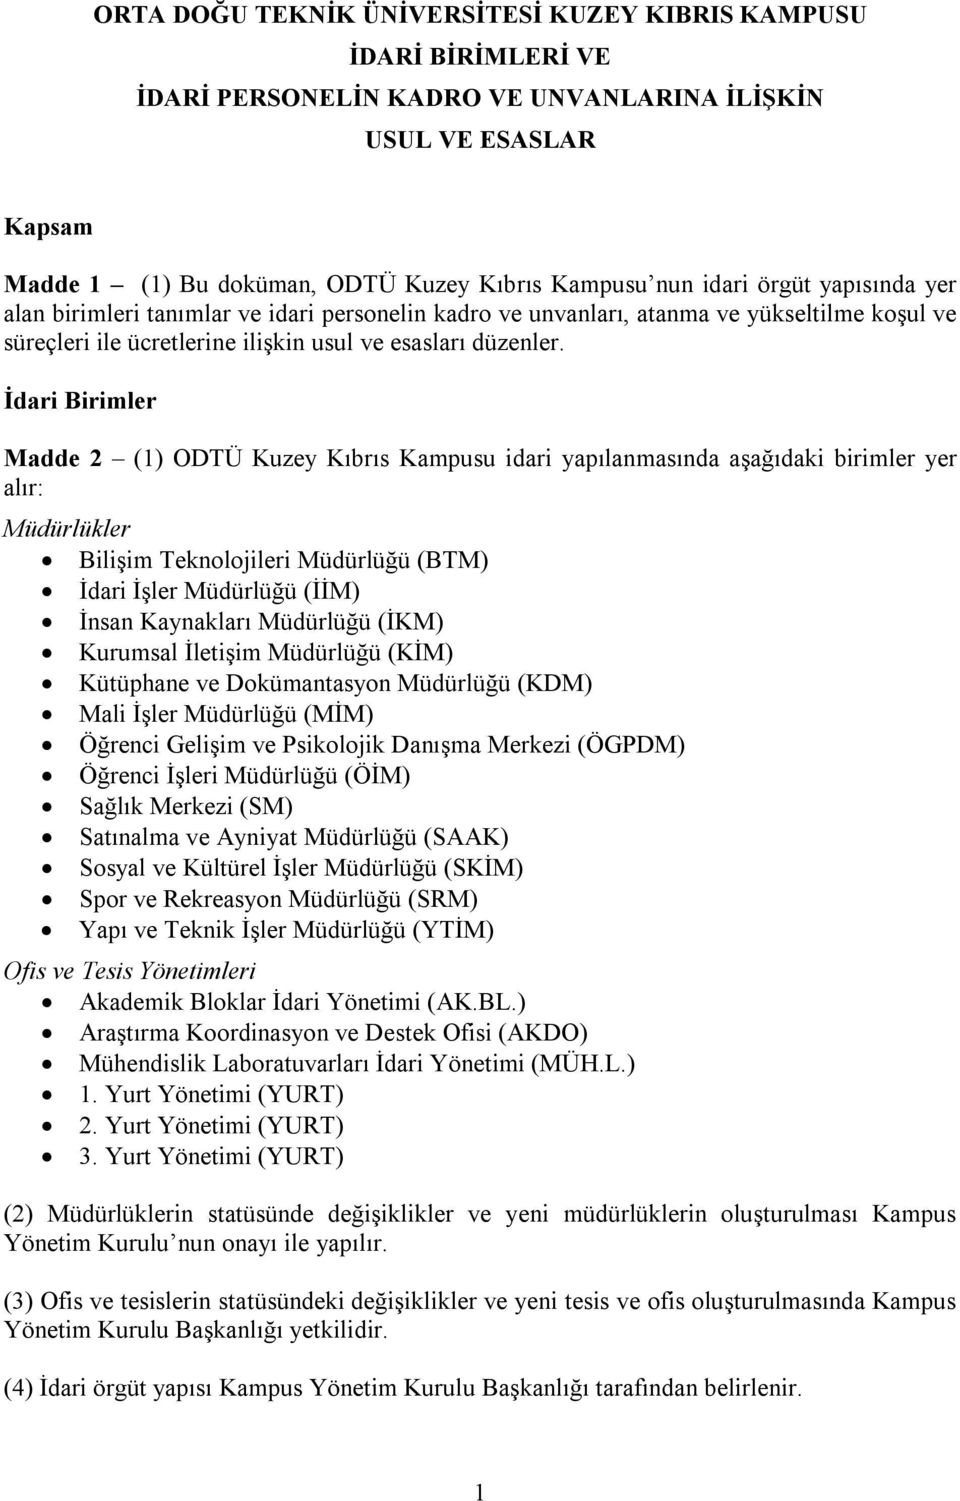 İdari Birimler Madde 2 (1) ODTÜ Kuzey Kıbrıs Kampusu idari yapılanmasında aşağıdaki birimler yer alır: Müdürlükler Bilişim Teknolojileri Müdürlüğü (BTM) İdari İşler Müdürlüğü (İİM) İnsan Kaynakları